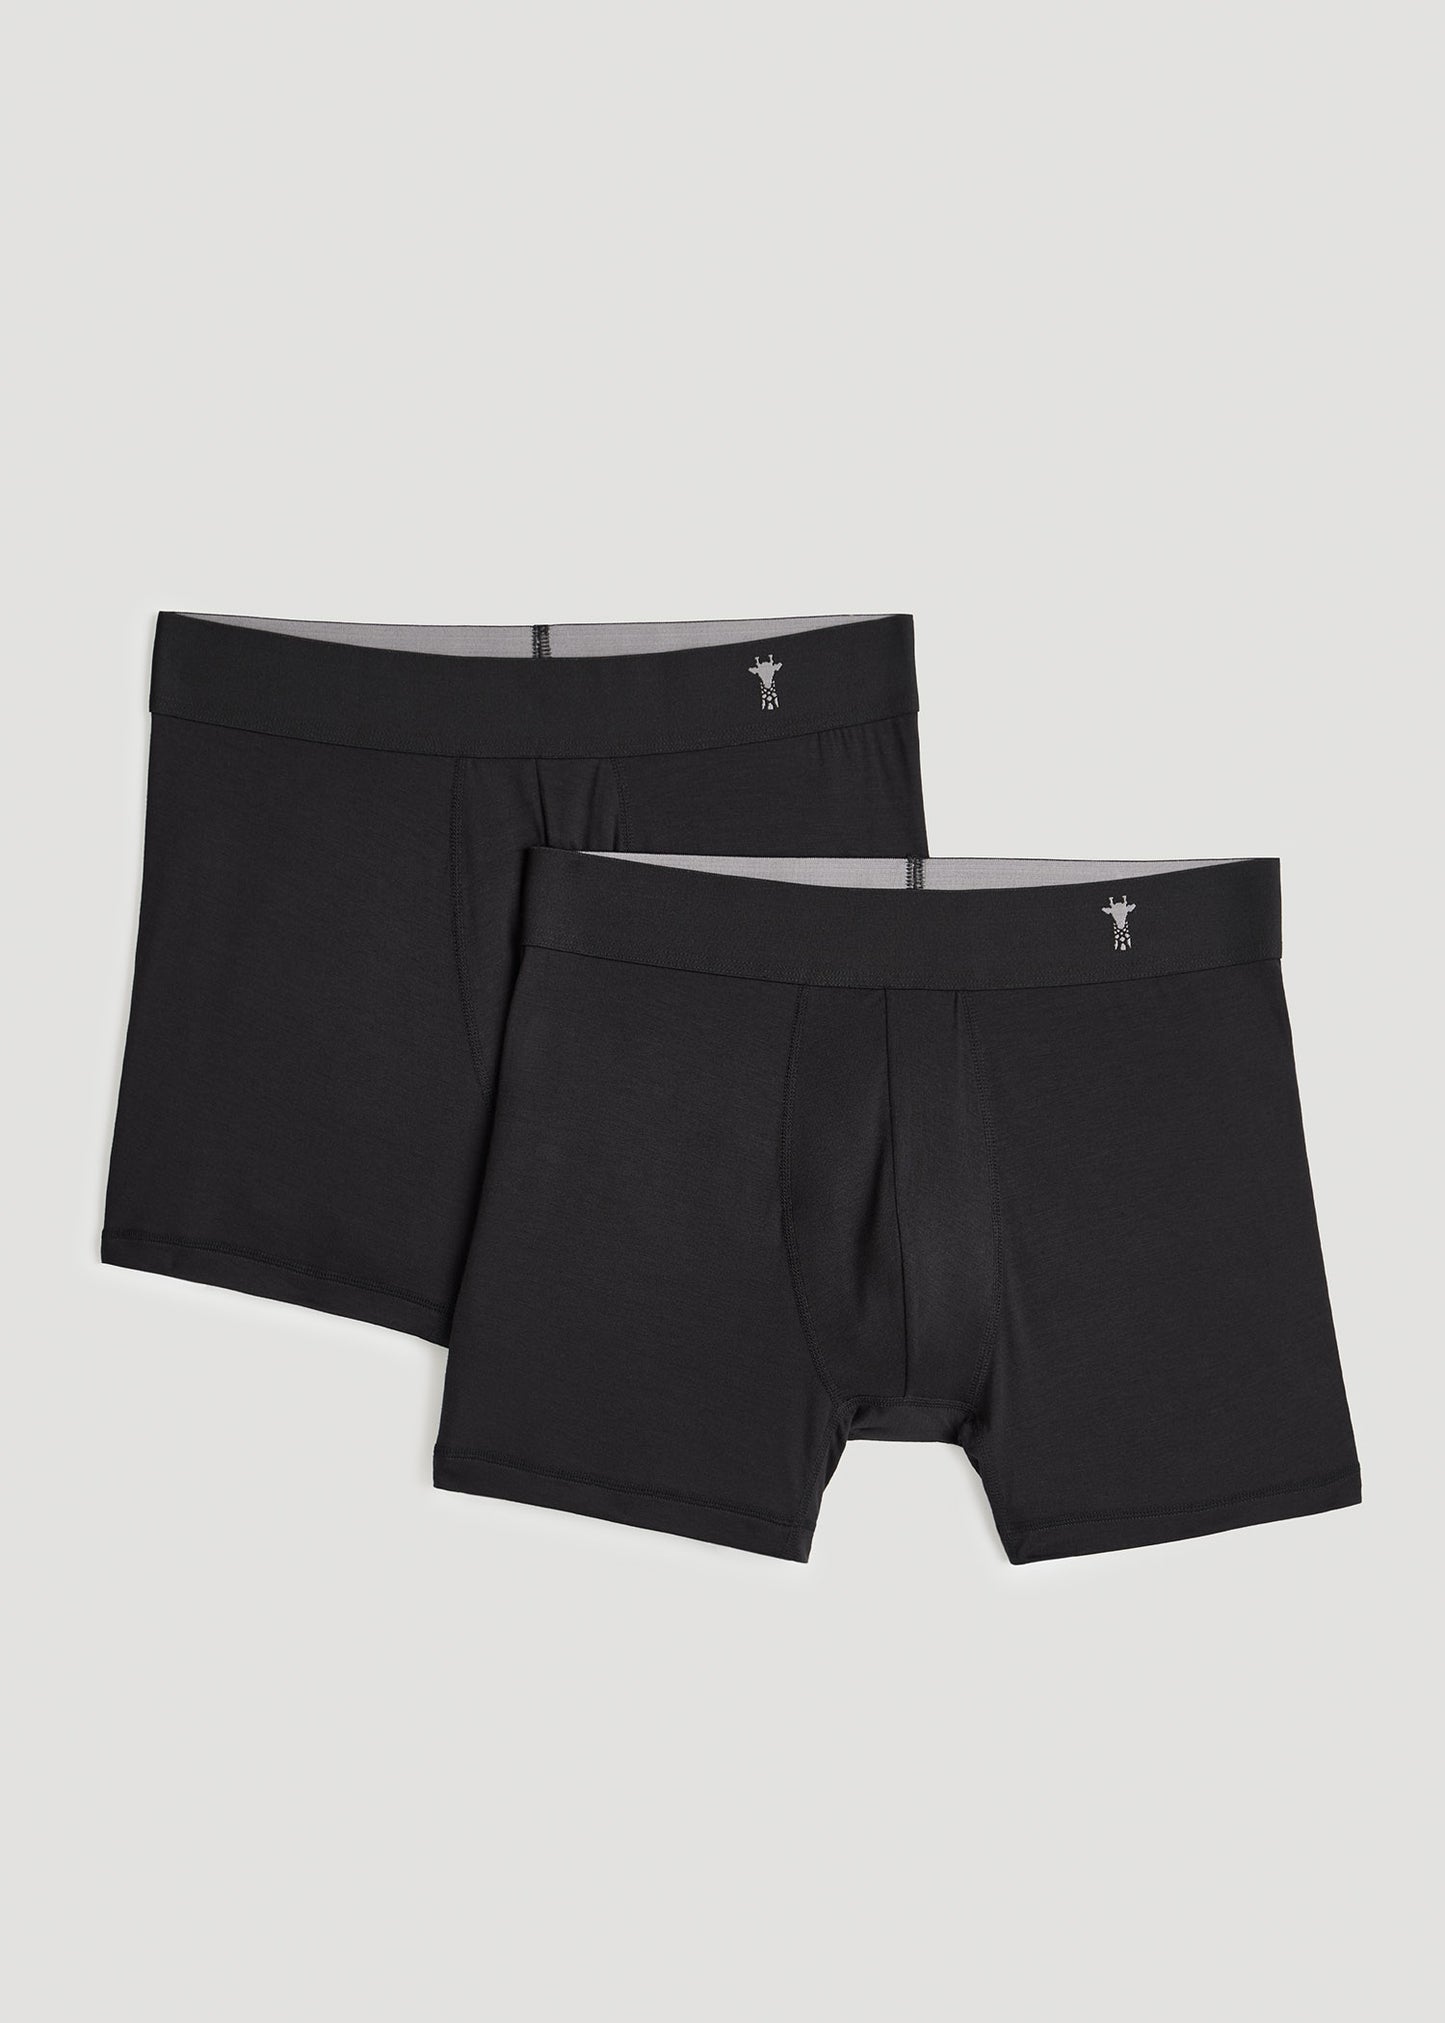 New Balance Men's Modal 6 Inseam Boxer Brief Underwear